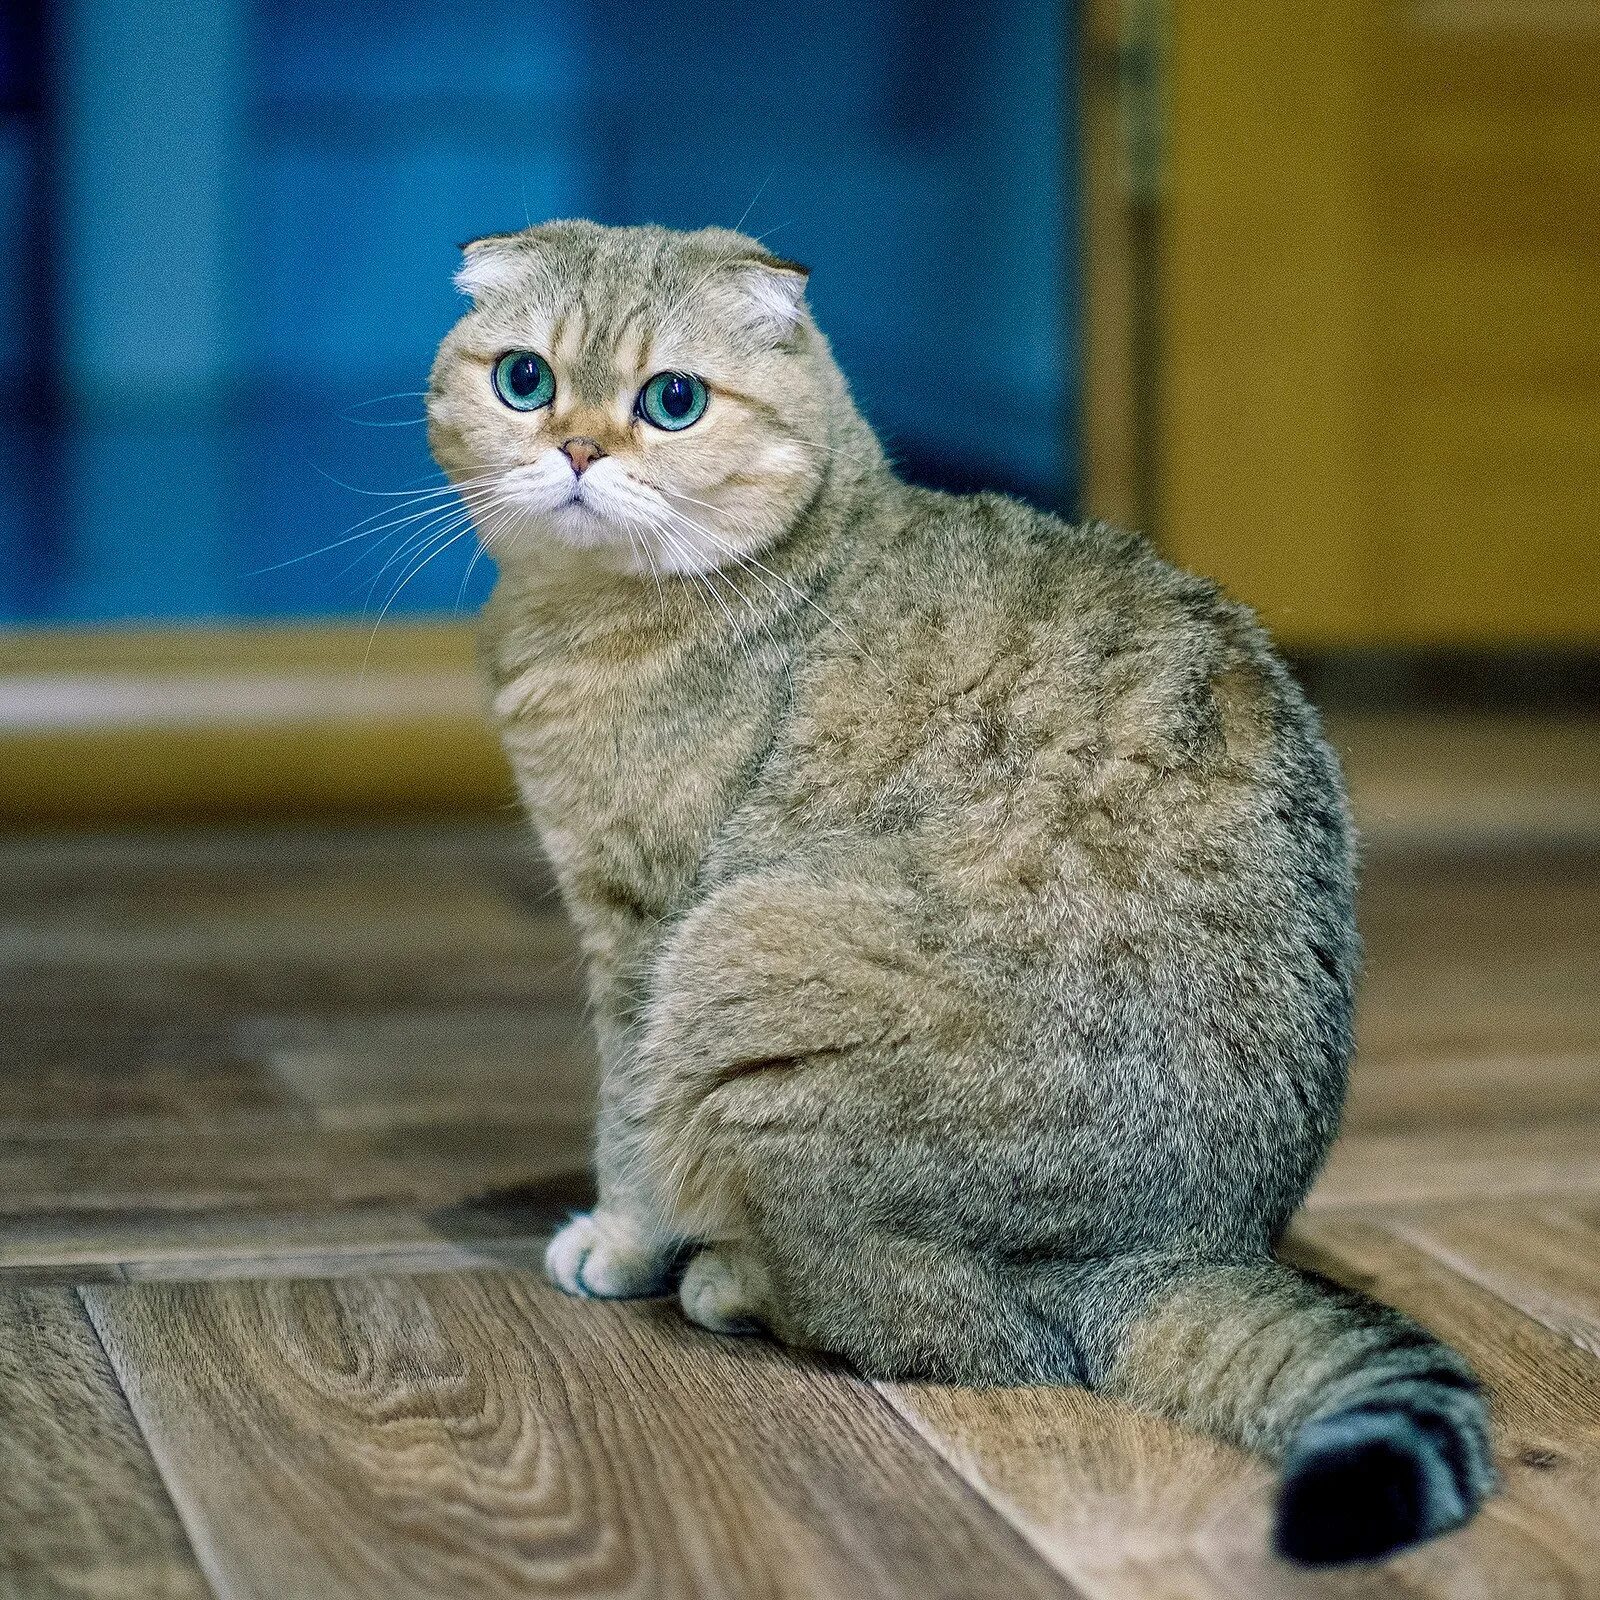 Рассмотрите фотографию кошки породы шотландская вислоухая. Скоттиш-фолд Шотландская вислоухая. Шотландский вислоухий скоттиш. Шатлансковислоухая кошка. Шотландская вислоухая фолд.